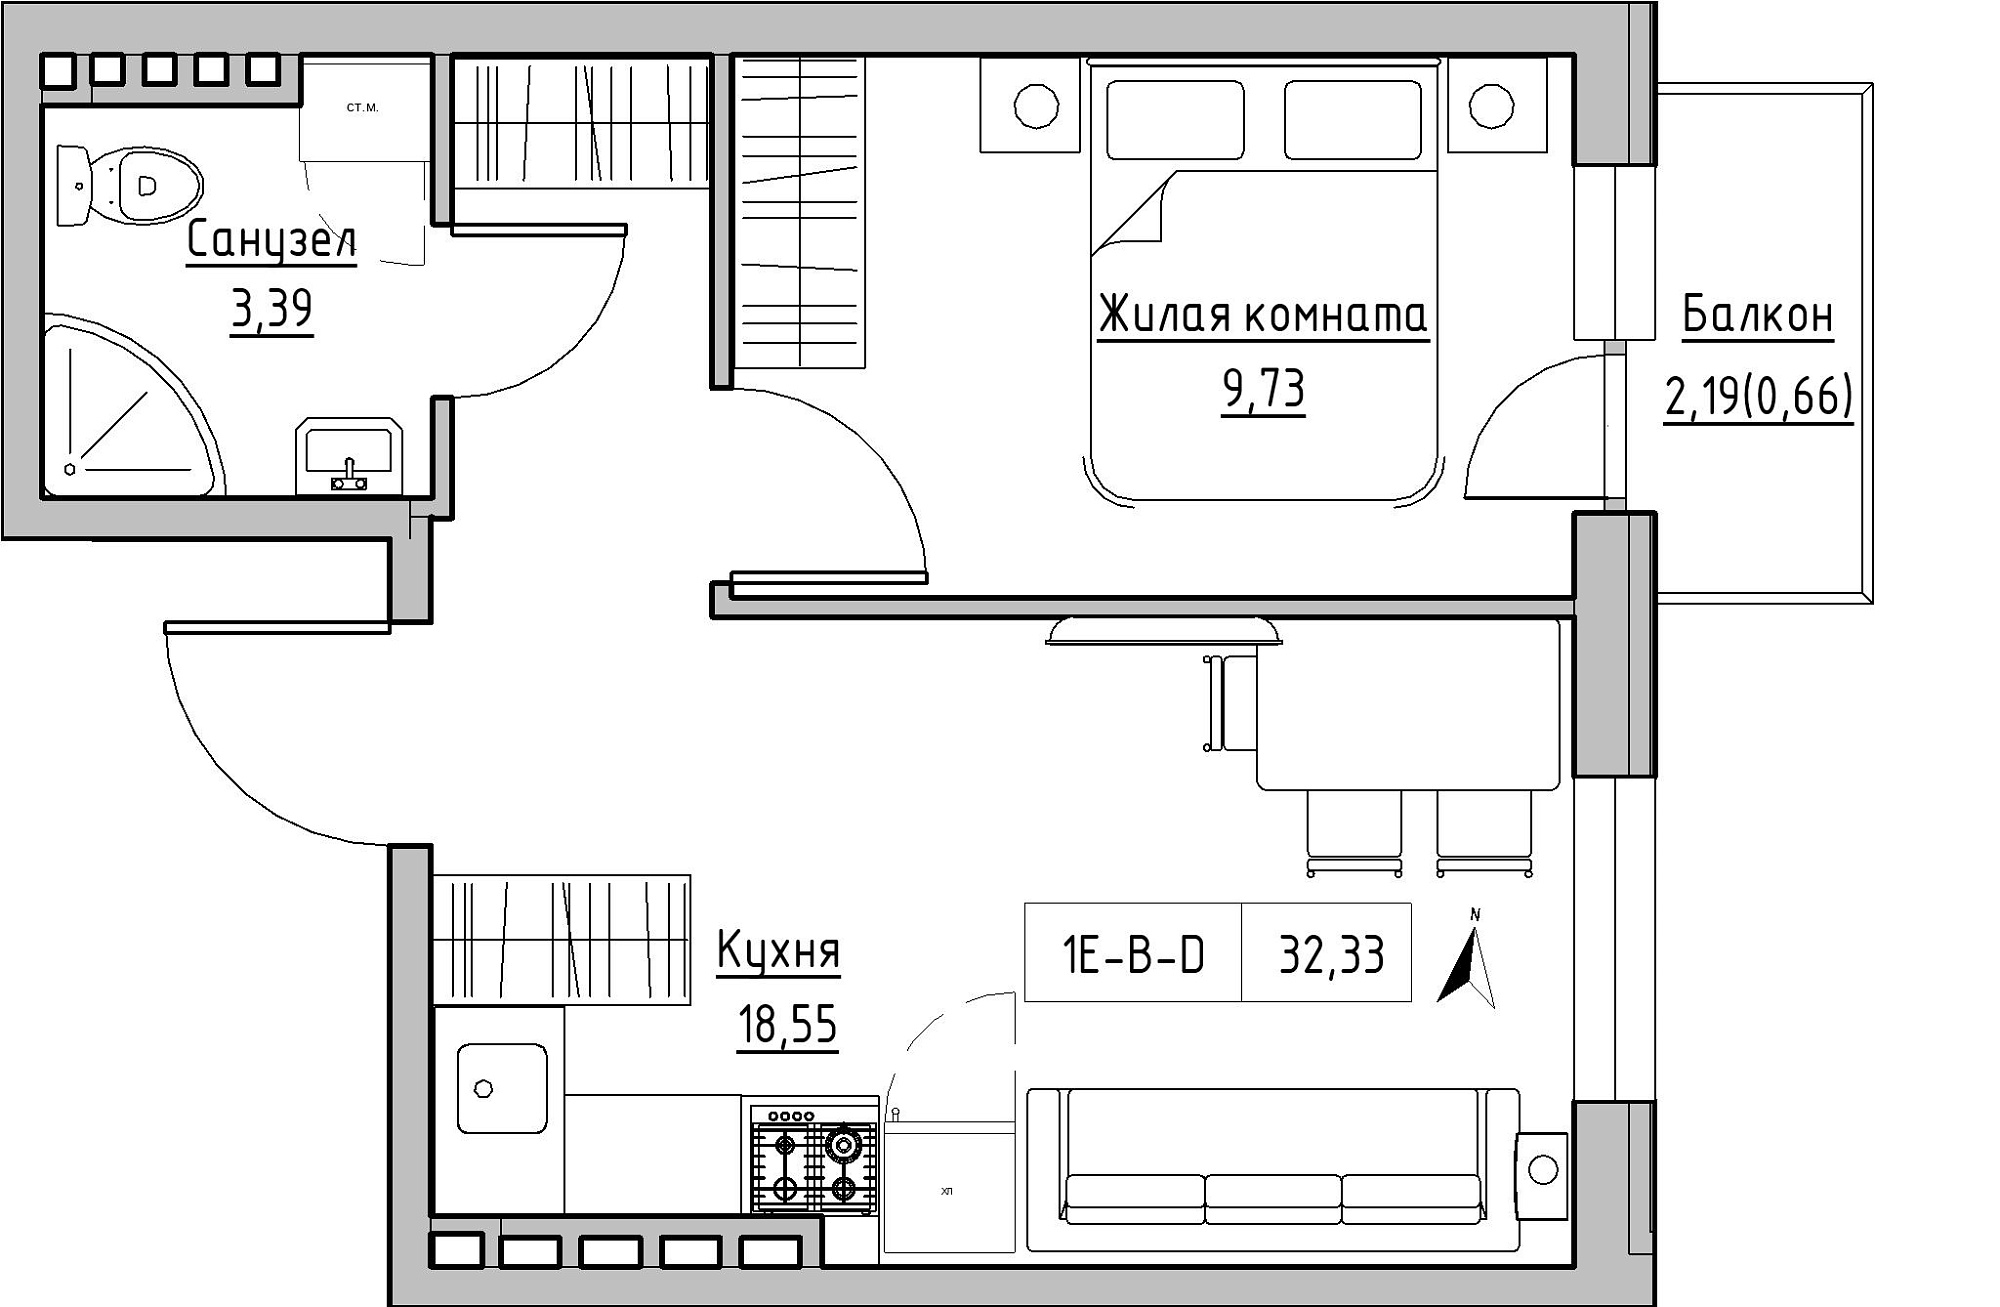 Планировка 1-к квартира площей 32.33м2, KS-024-04/0015.